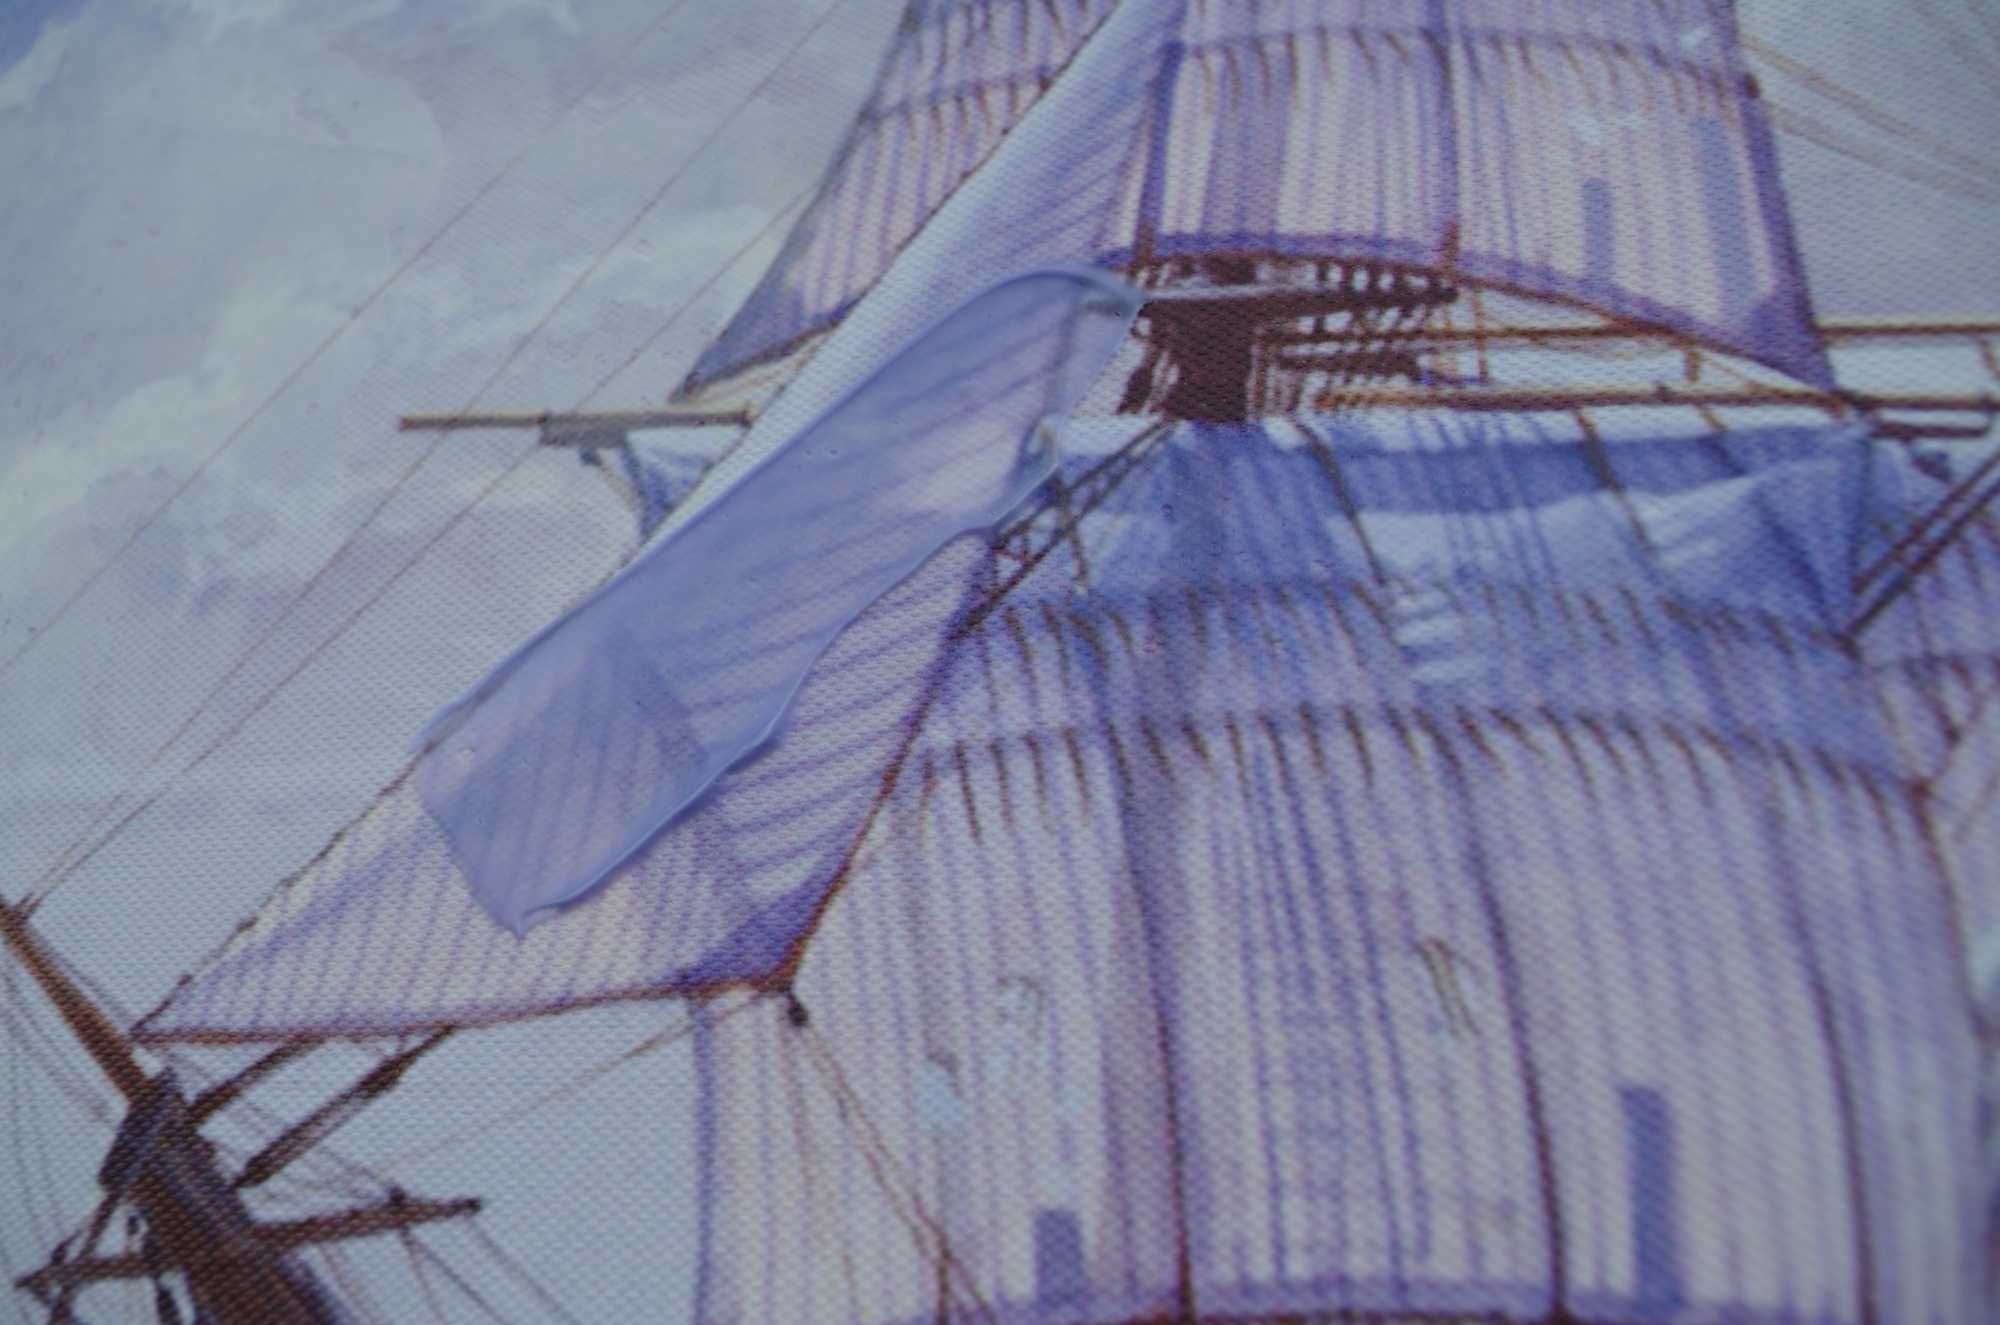 obraz do salonu statki na morzu ręcznie malowany